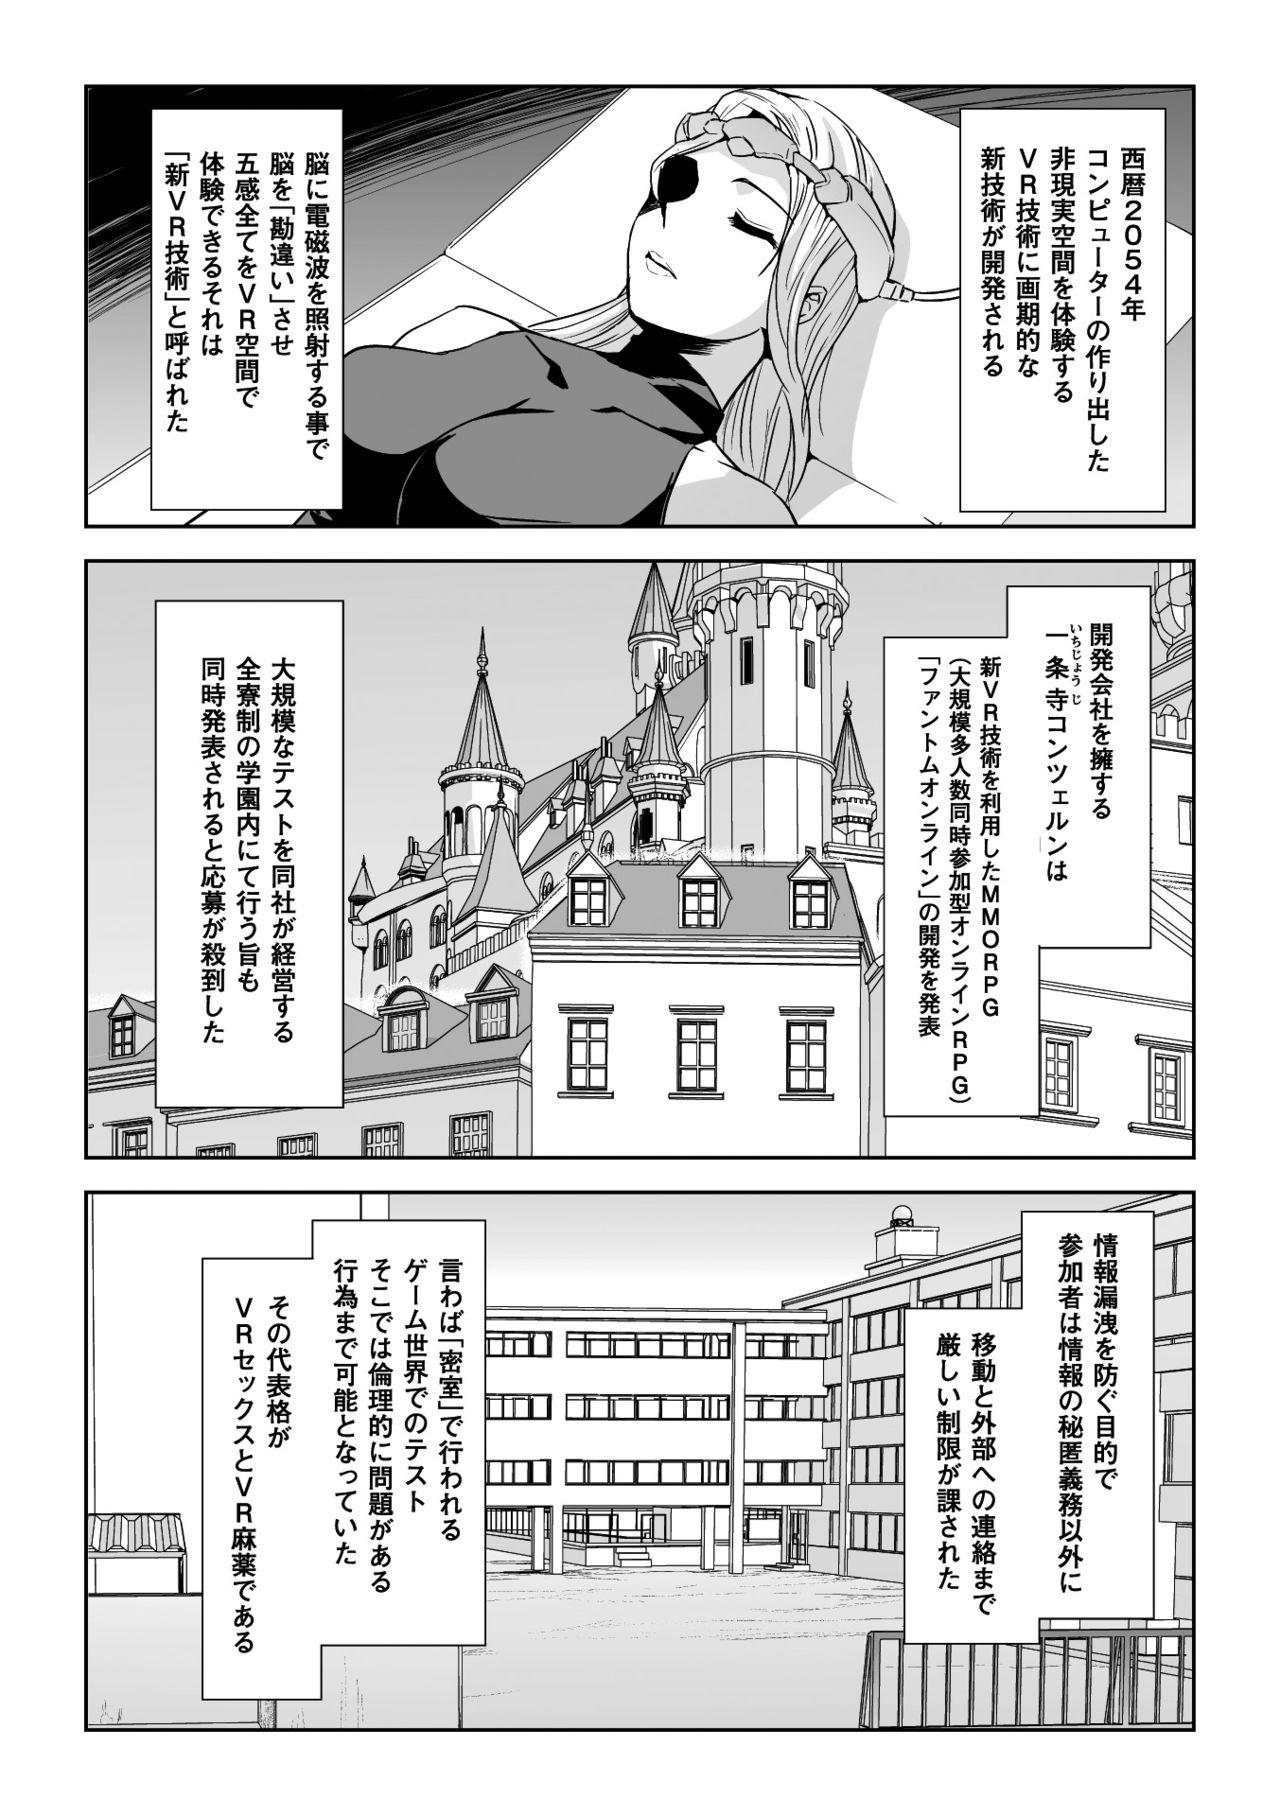 Seigi no Heroine Kangoku File Vol. 14 4